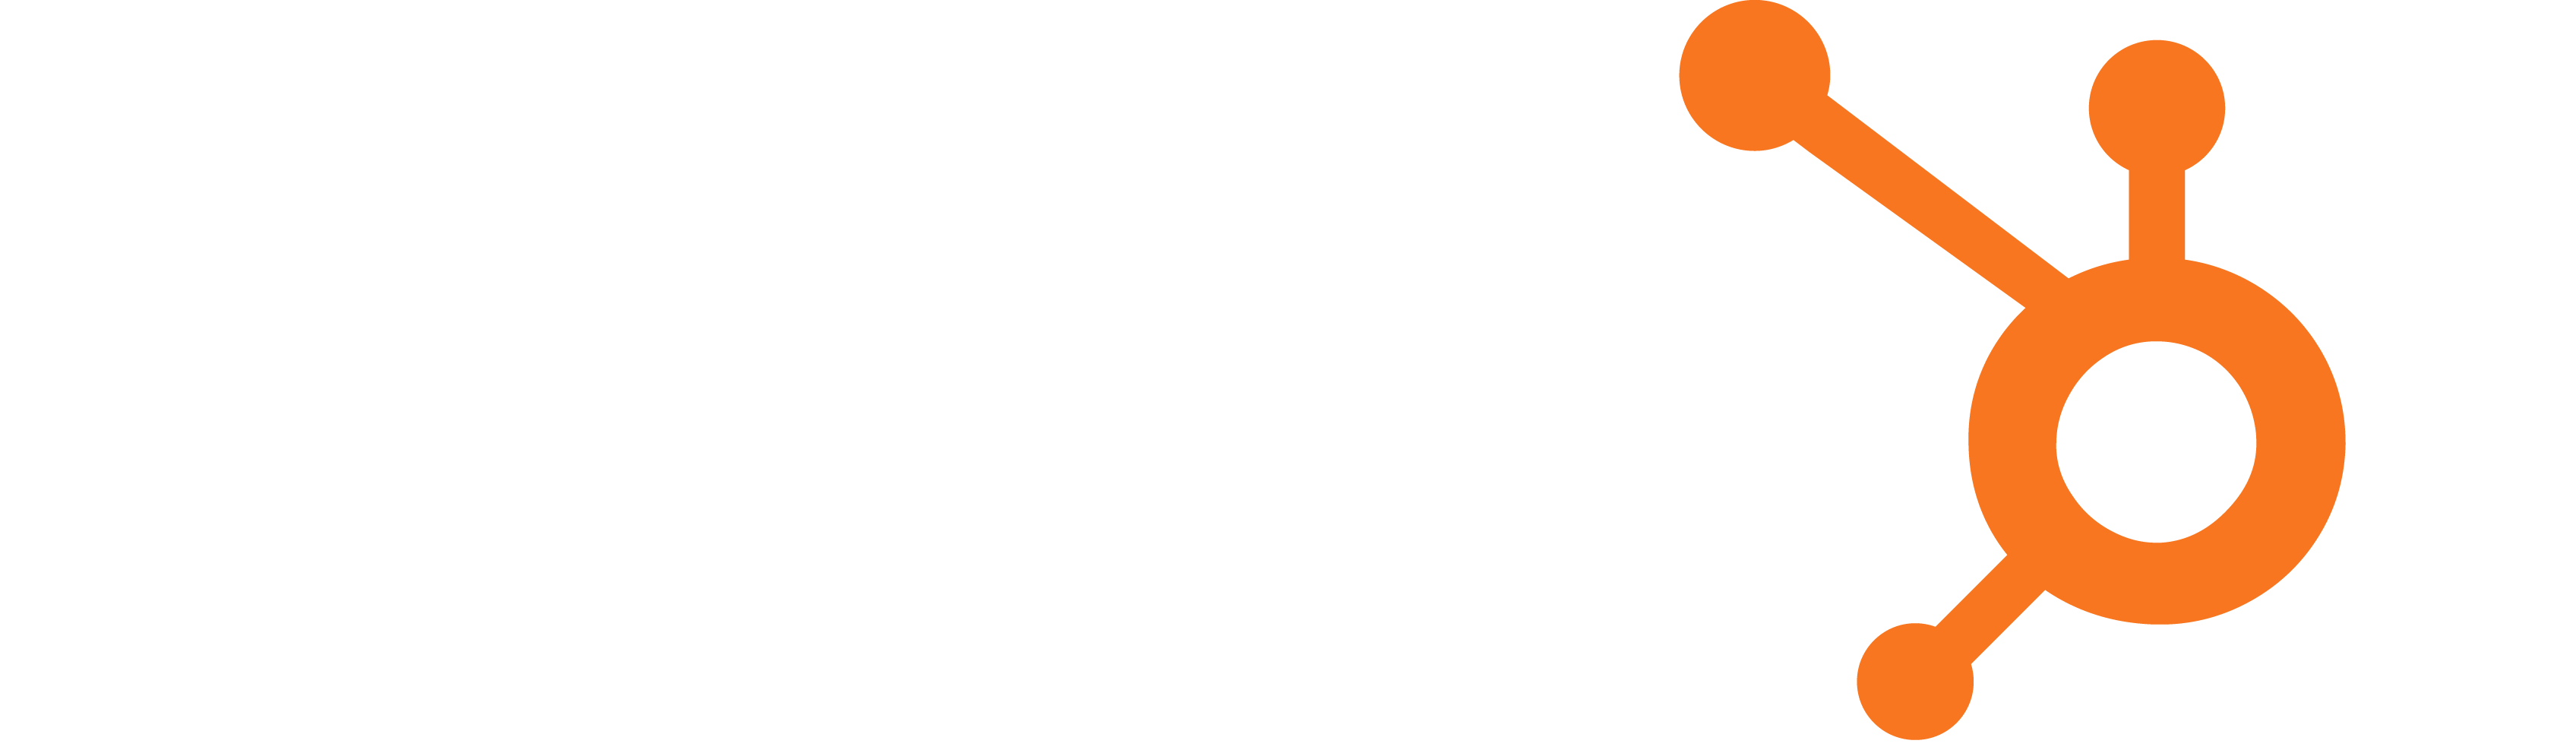 Twitter Logo Transparent Instagram Logo Twitter Logo - Hubspot, Inc. Clipart (3391x987), Png Download